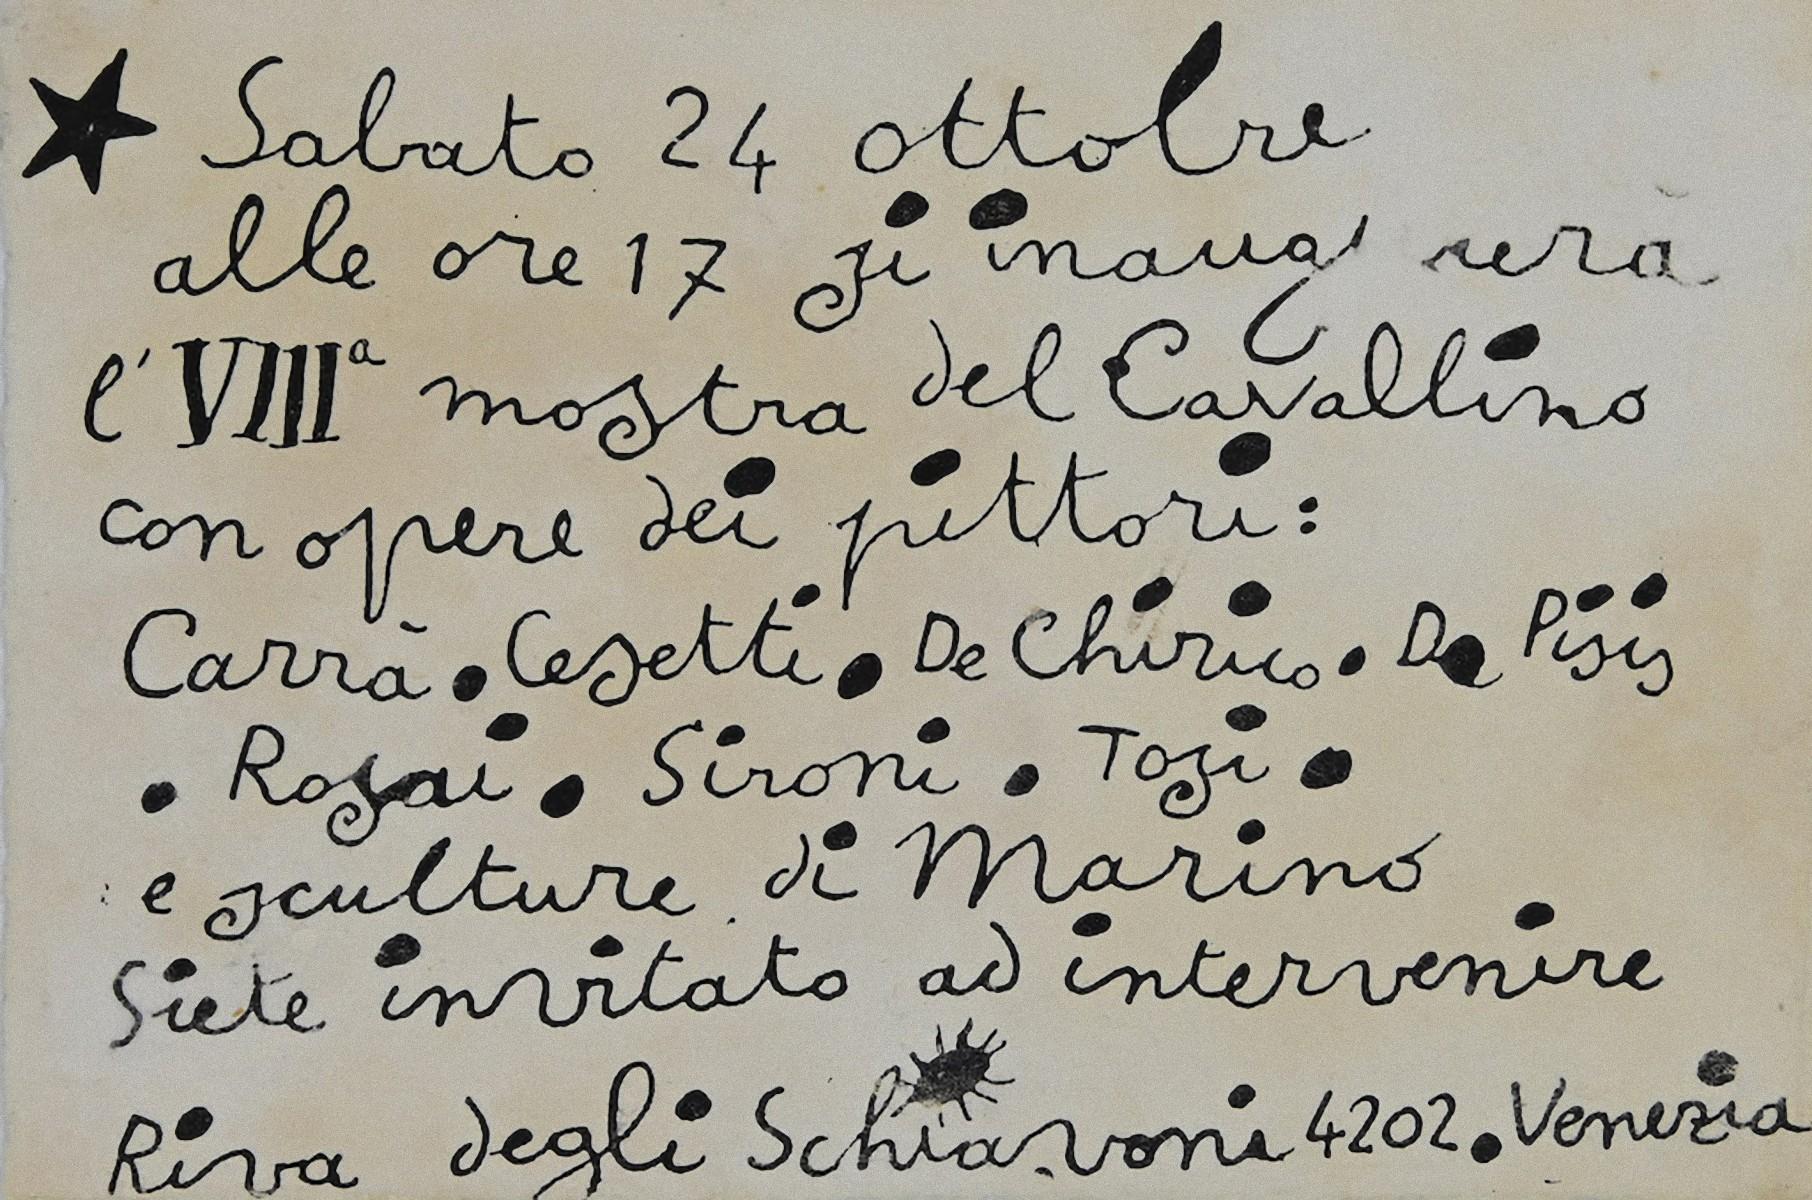 Invitation of "Mostra del Cavallino 1942" - Original Lithograph-Invitation Card - Art by Unknown